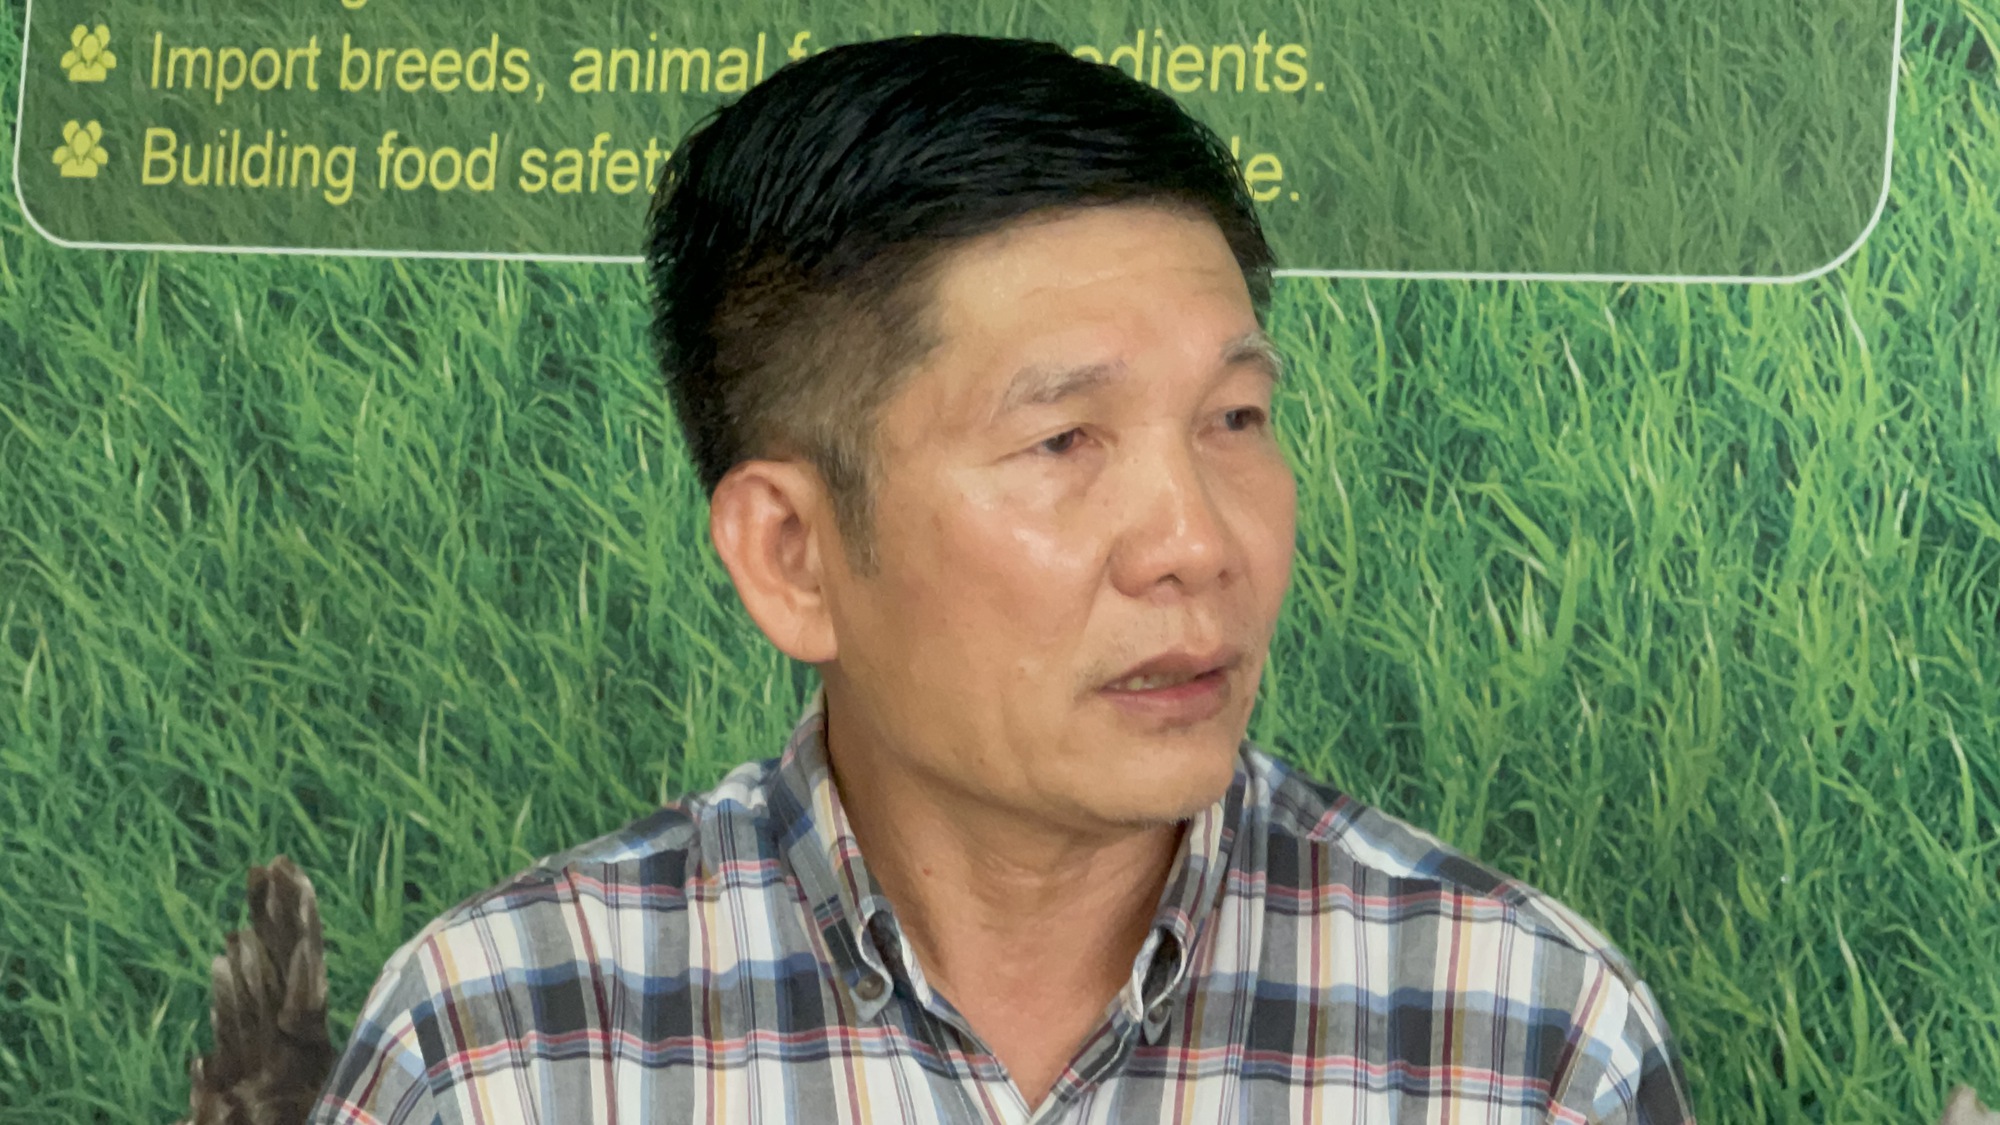 Chủ tịch Hiệp hội chăn nuôi Đồng Nai gửi tâm thư đến Ngân hàng Nhà nước xin hỗ trợ khẩn cấp cho ngành chăn nuôi - Ảnh 1.